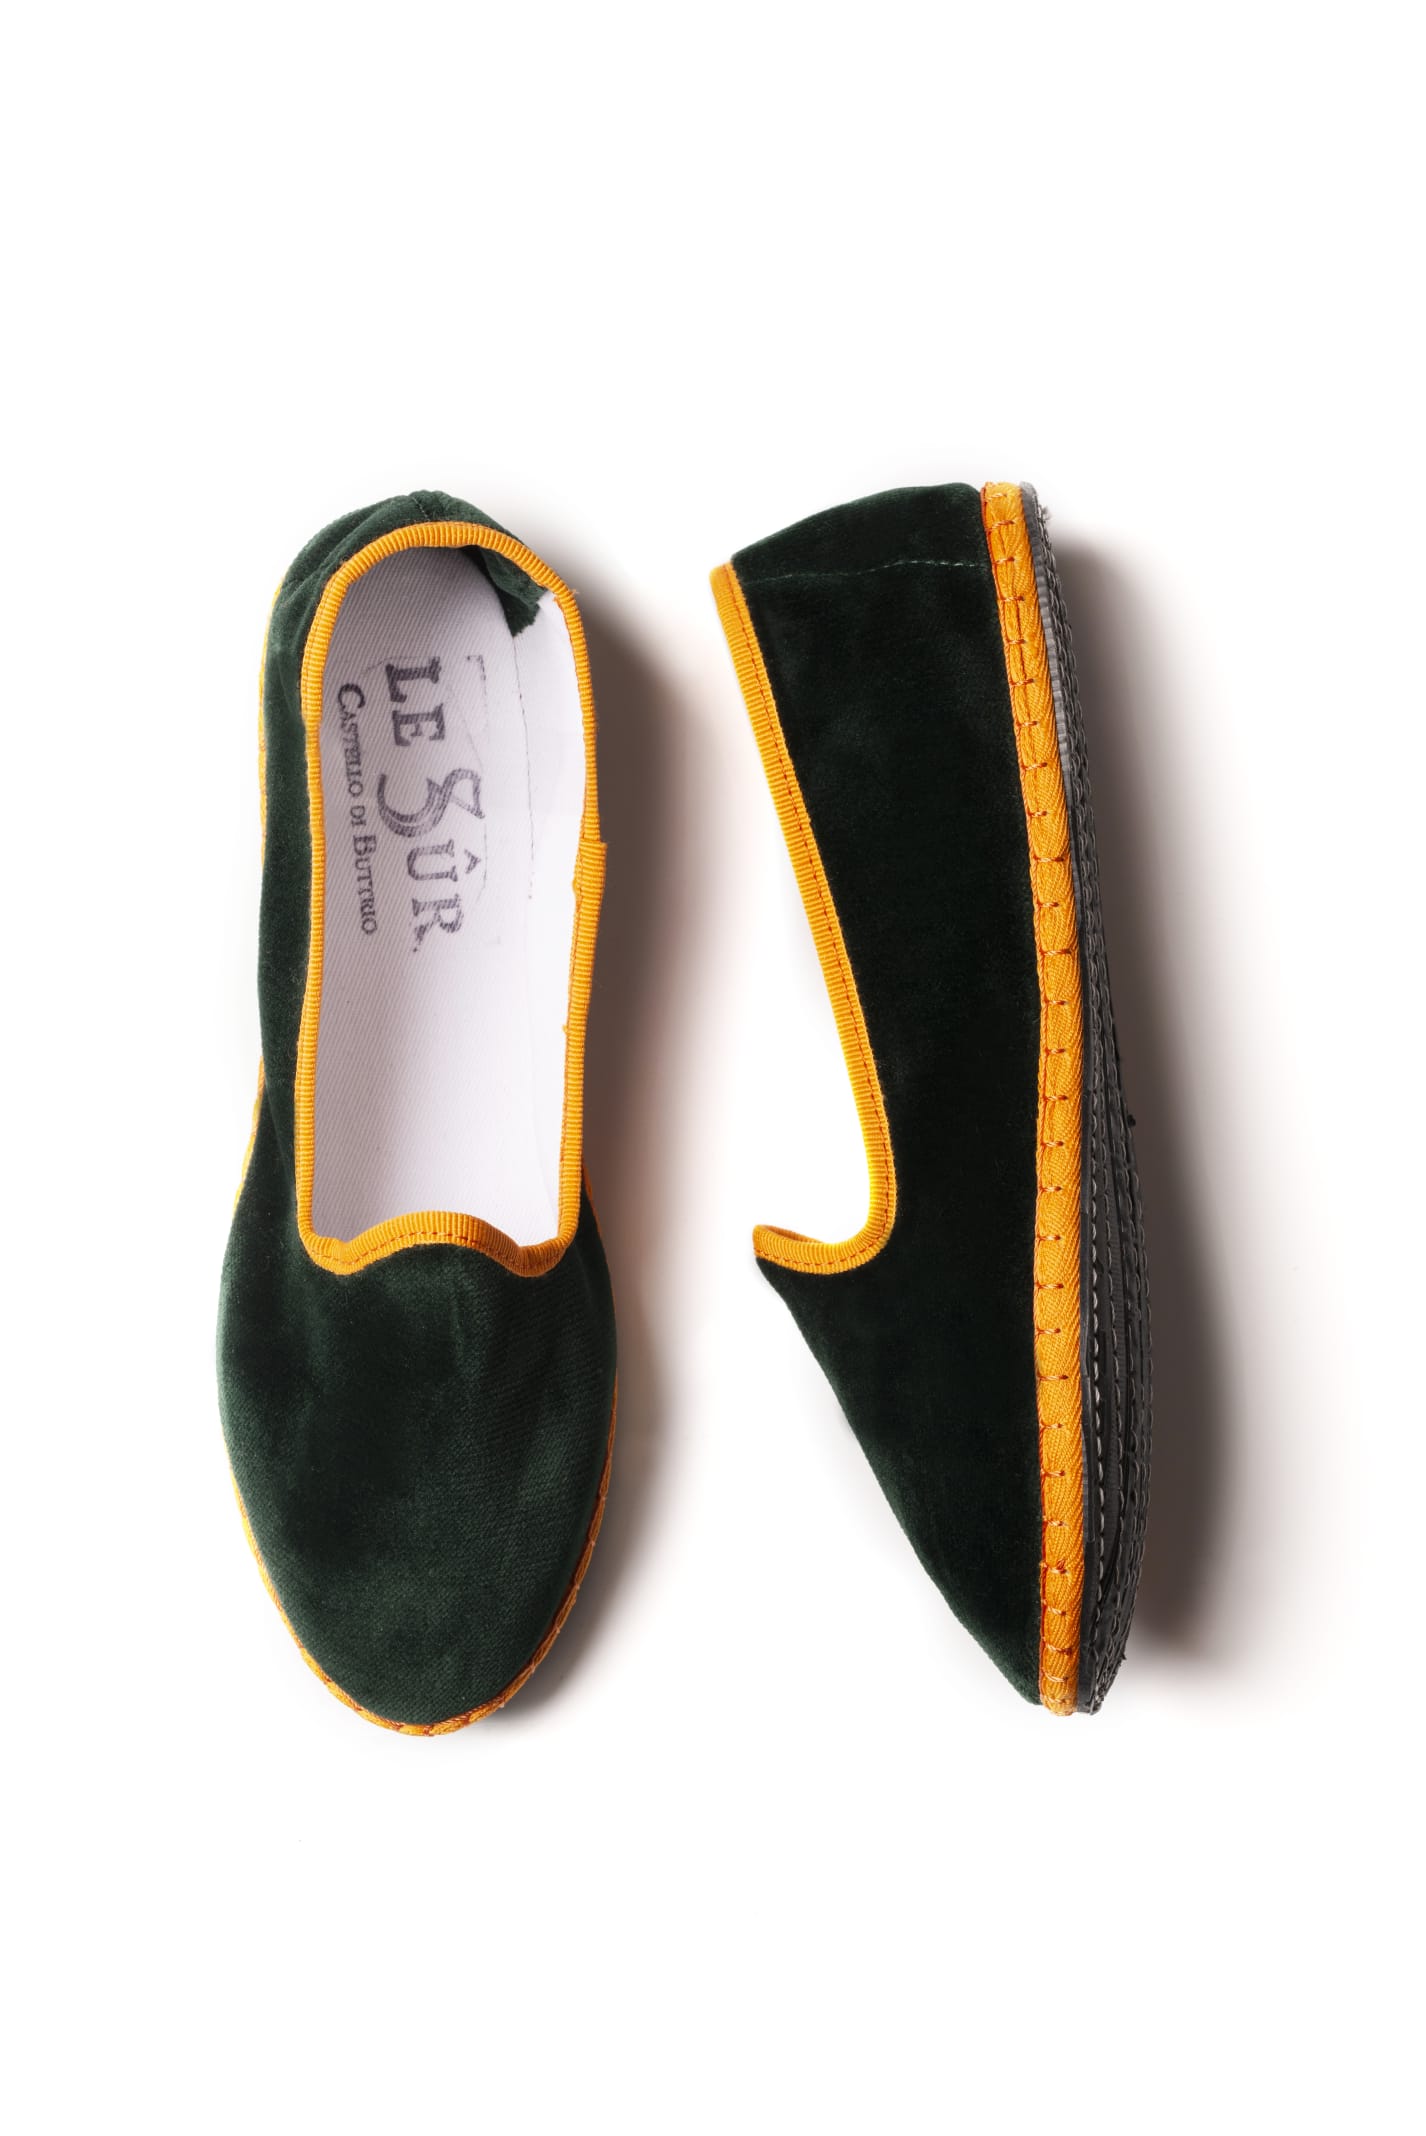 Shop Le Sur Friulana Loafer In Green & Orange